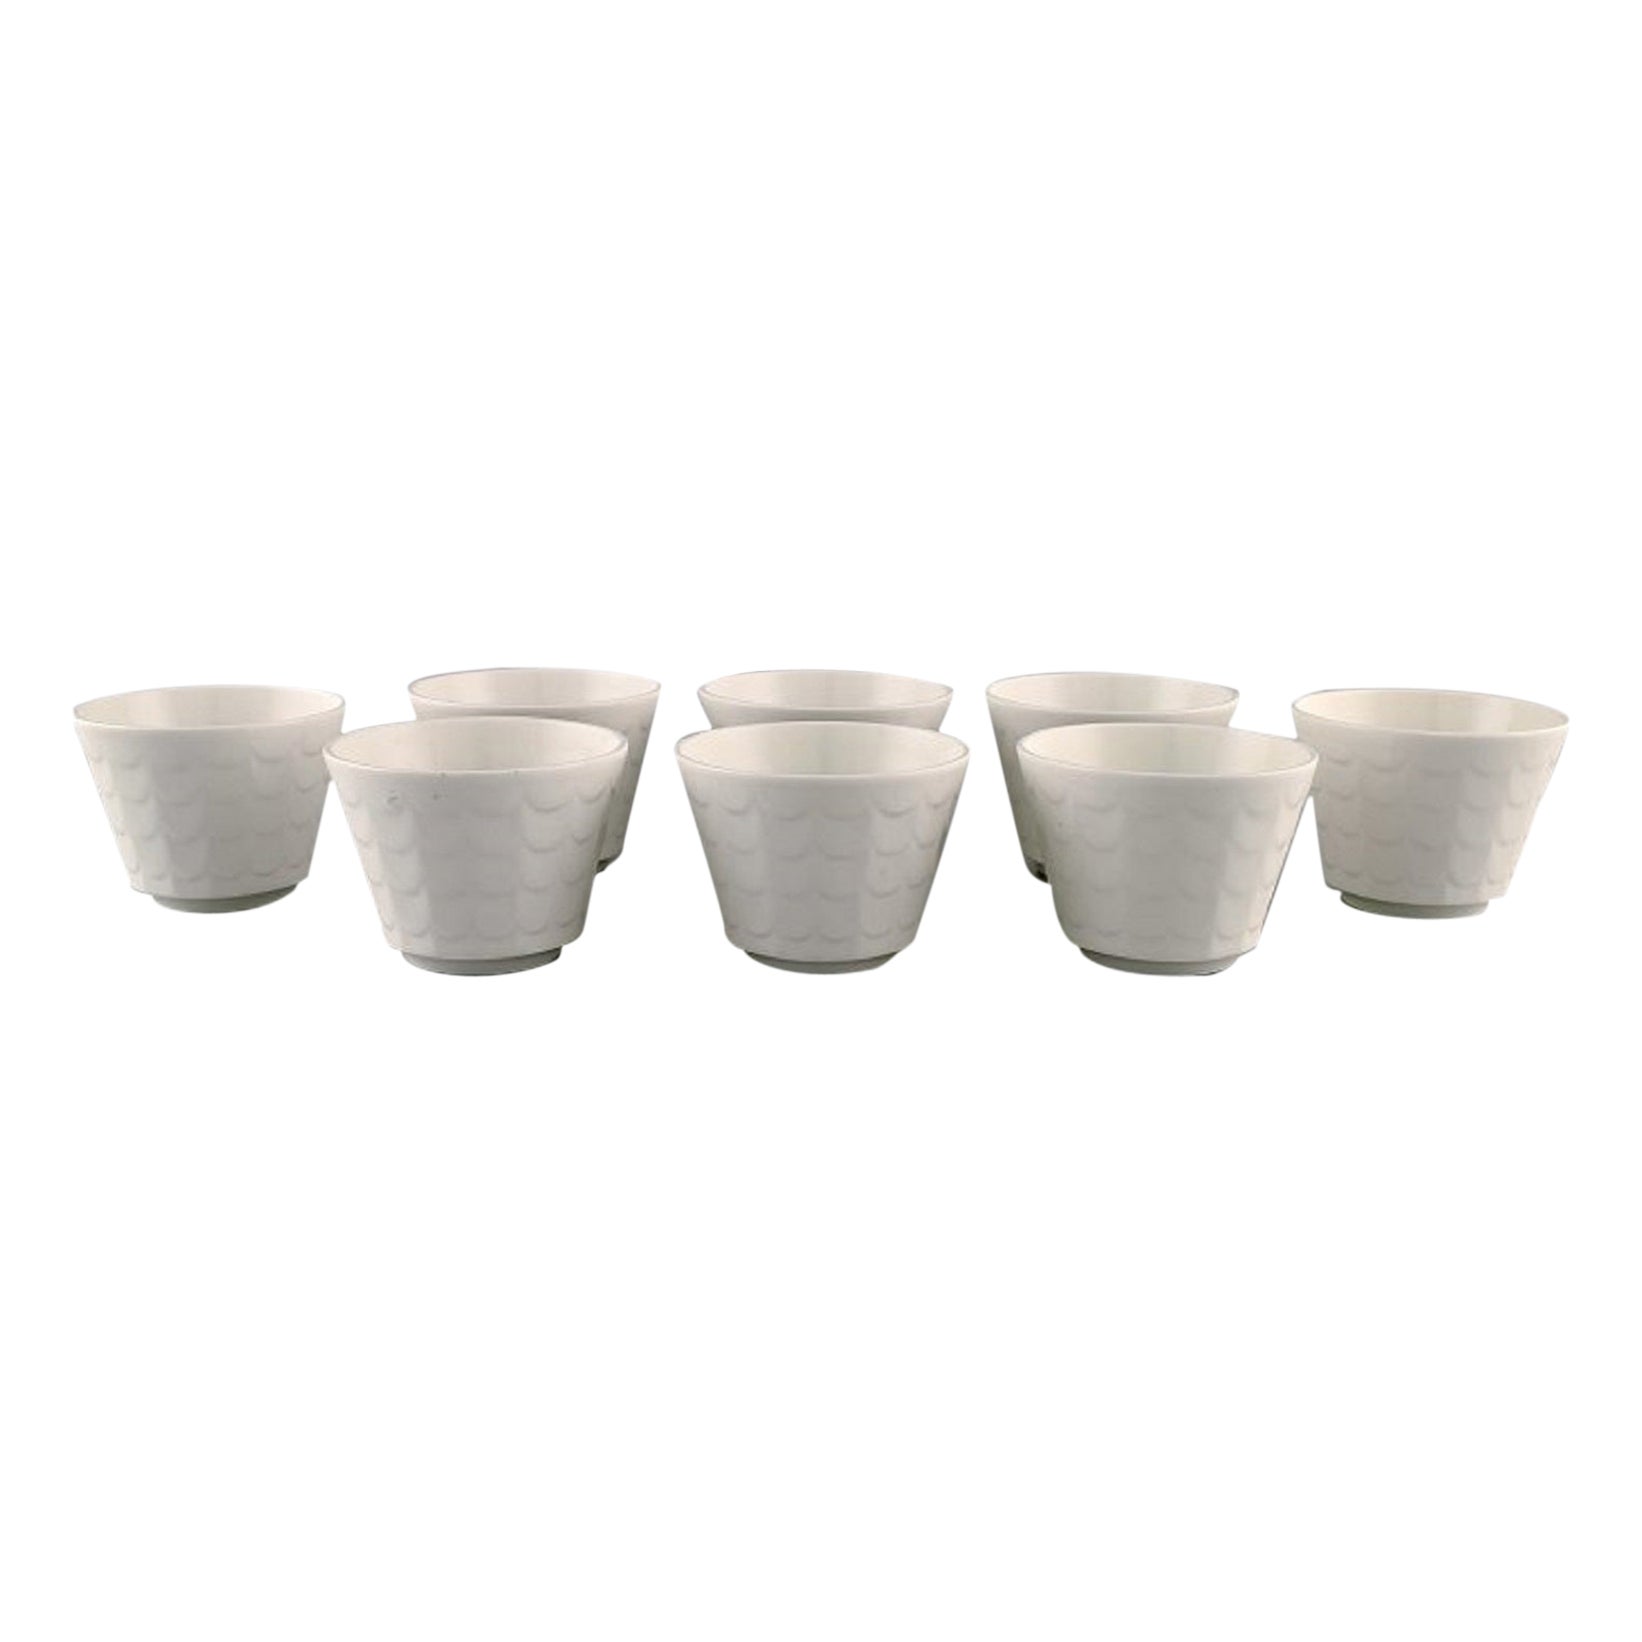 Wilhelm Kåge for Gustavsberg, Eight Herb Pots in White Glazed Porcelain